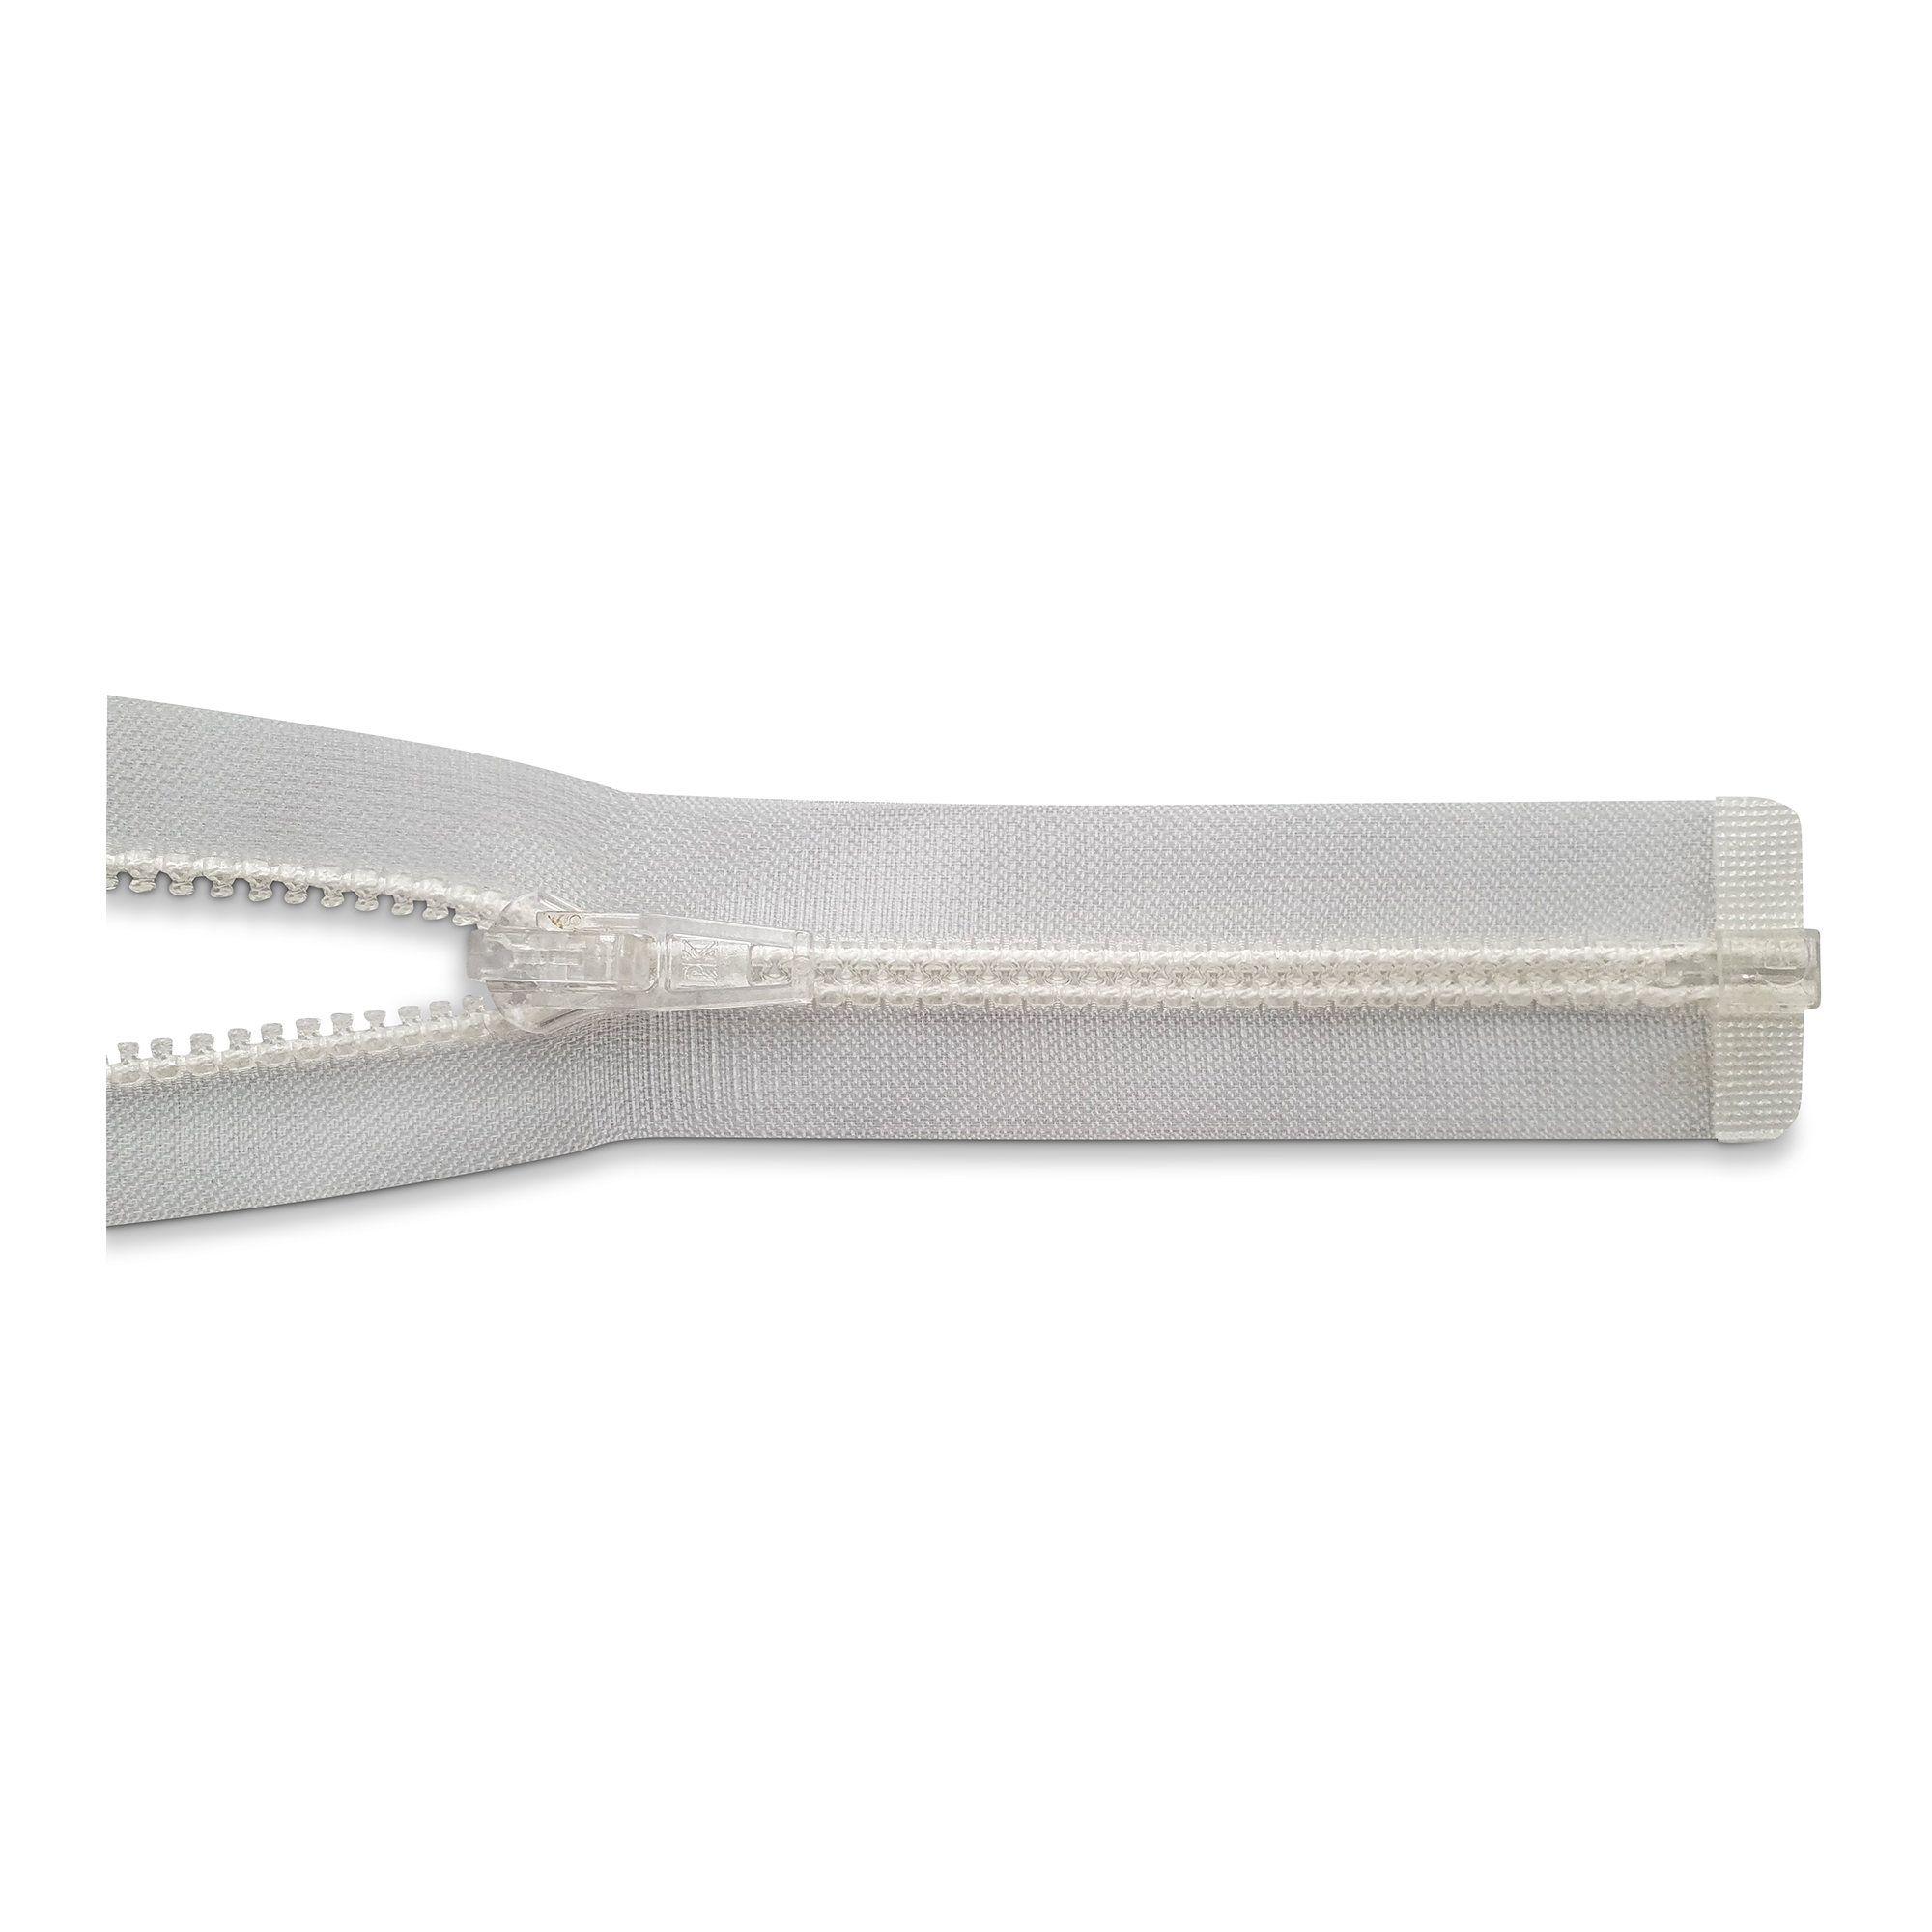 RV 100cm, 2-Wege, K.stoff Zähne breit, transparent